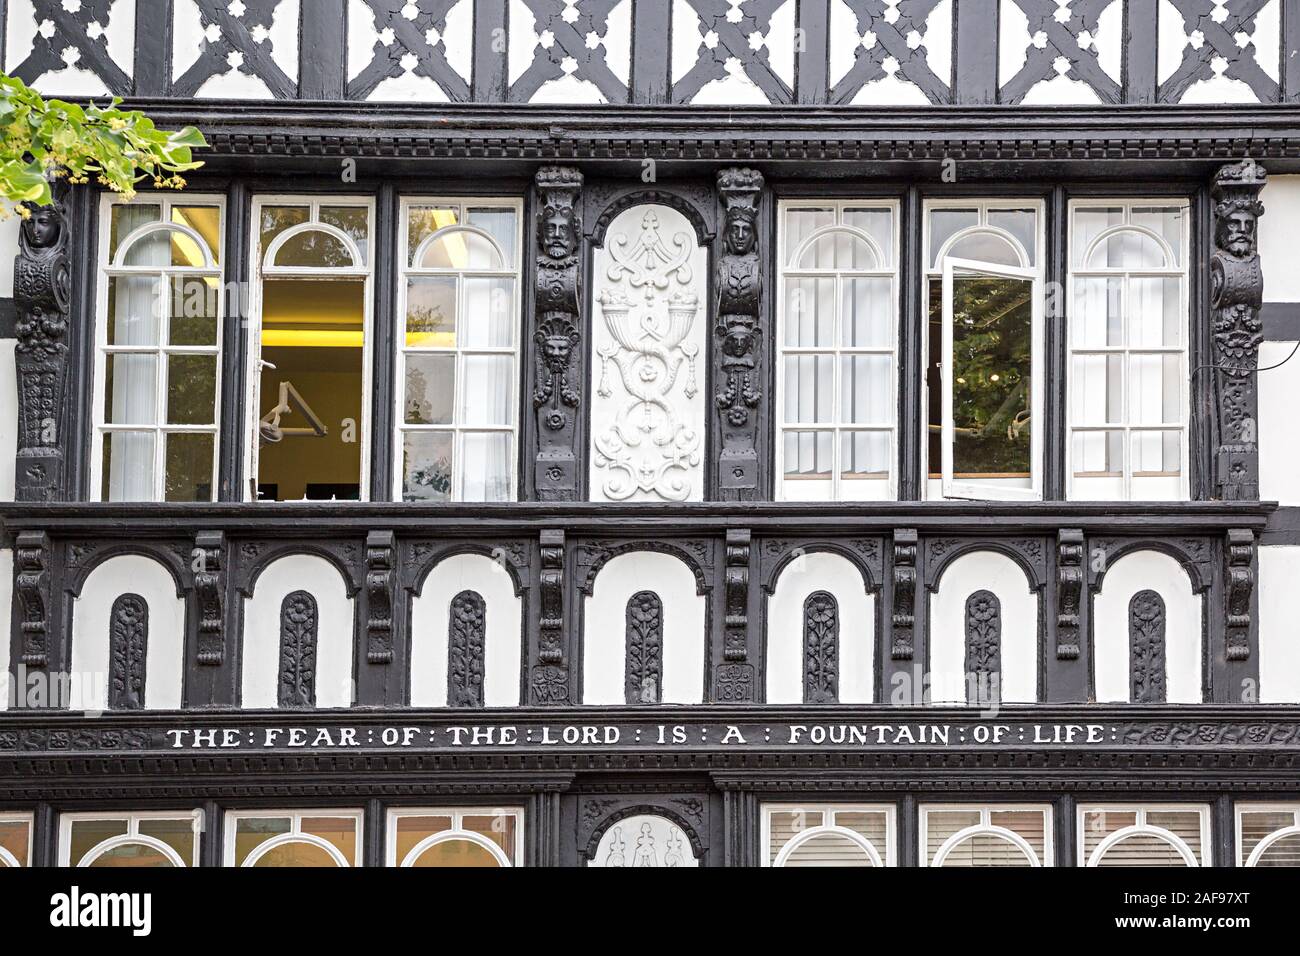 Fachwerk schwarz-weißes Gebäude mit religiösen Inschrift, die Furcht des Herrn ist eine Quelle des Lebens, Chester, Cheshire, England, Großbritannien Stockfoto